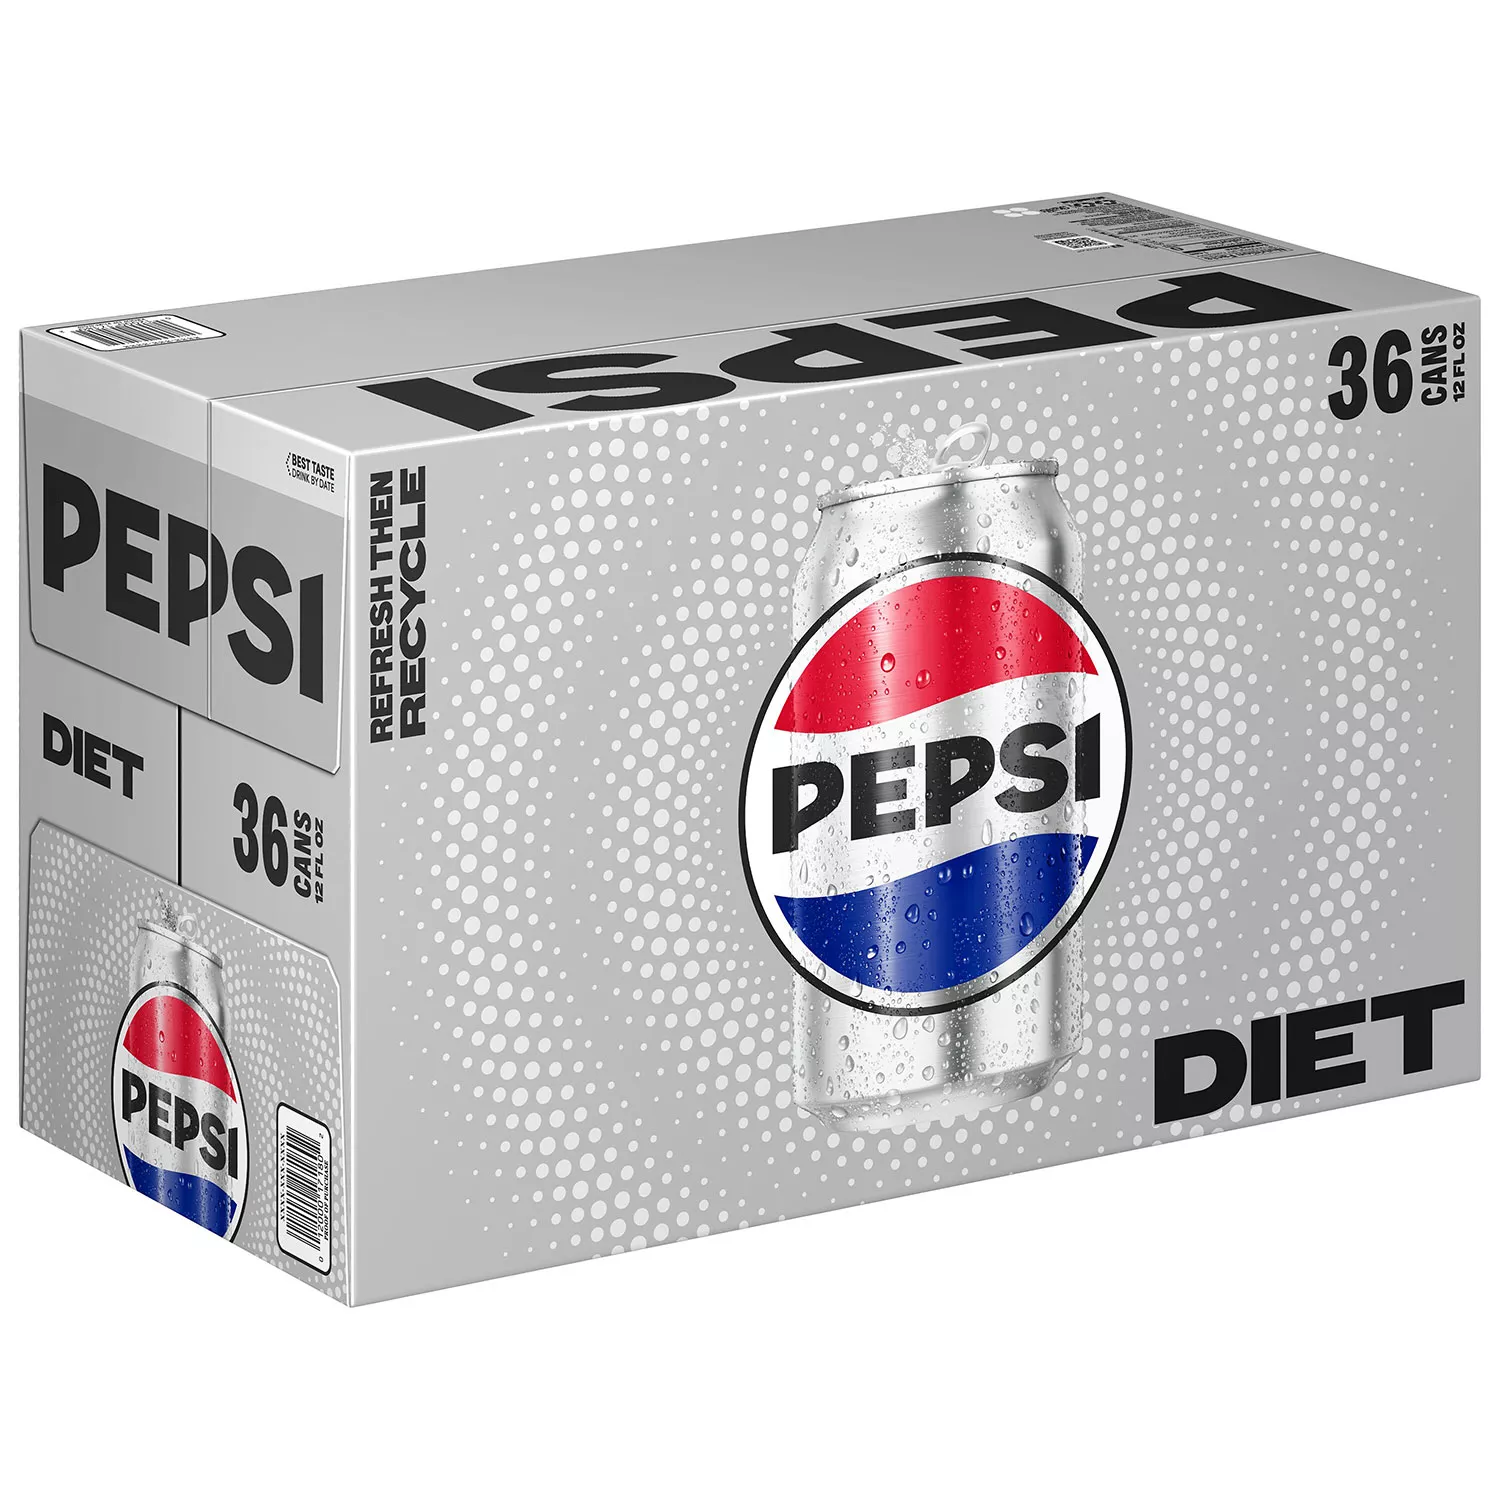 Best Diet Pepsi (12 oz. cans, 36 pk.)